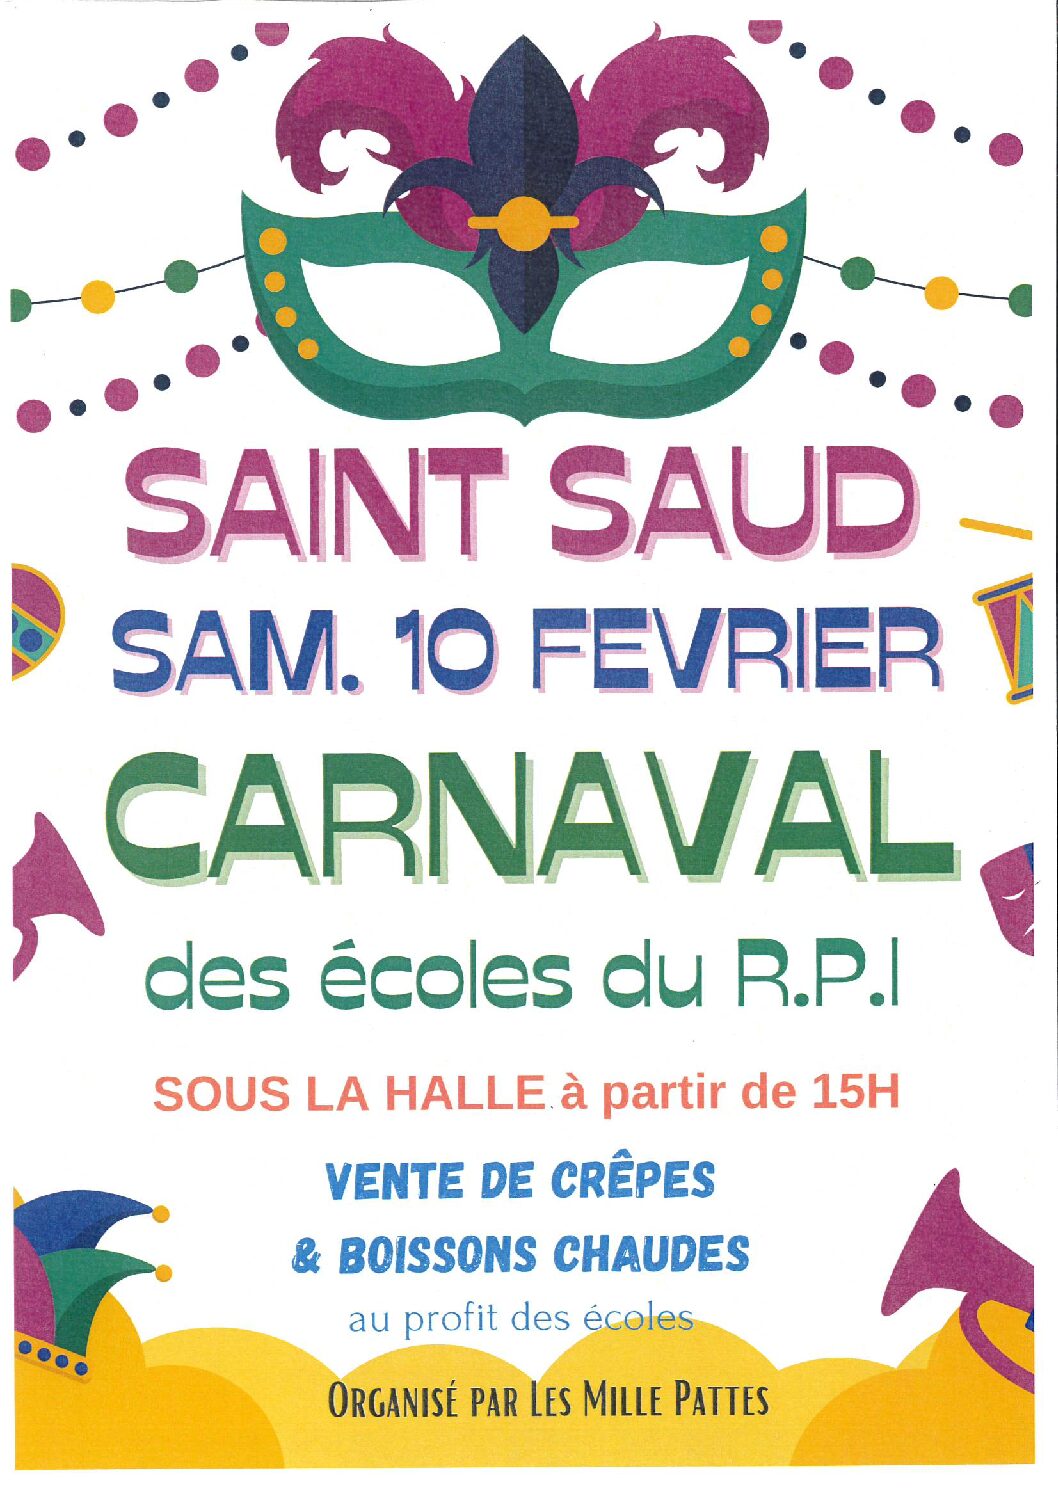 Carnaval des écoles du R.P.I le samedi 10 février